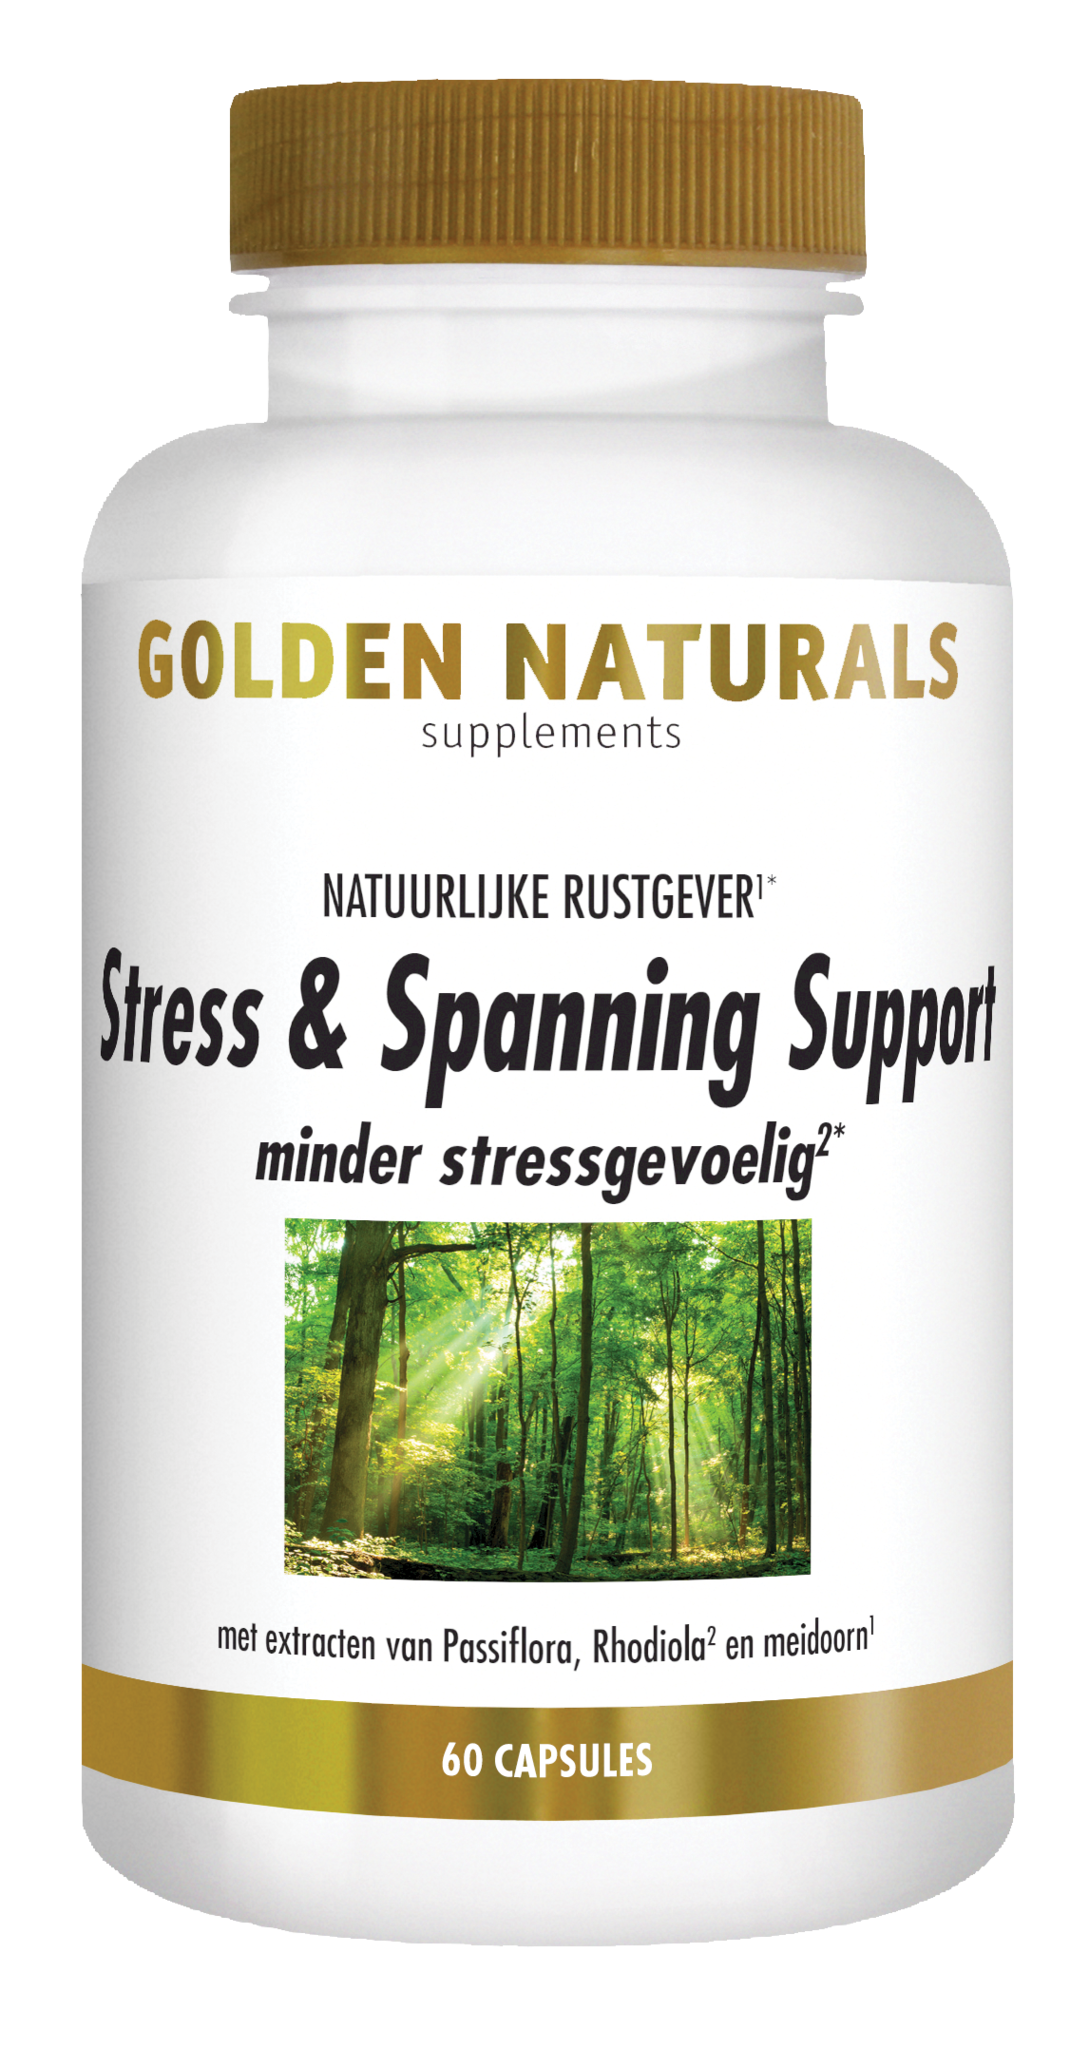 Golden Naturals Golden Naturals Stress & Spanning Support